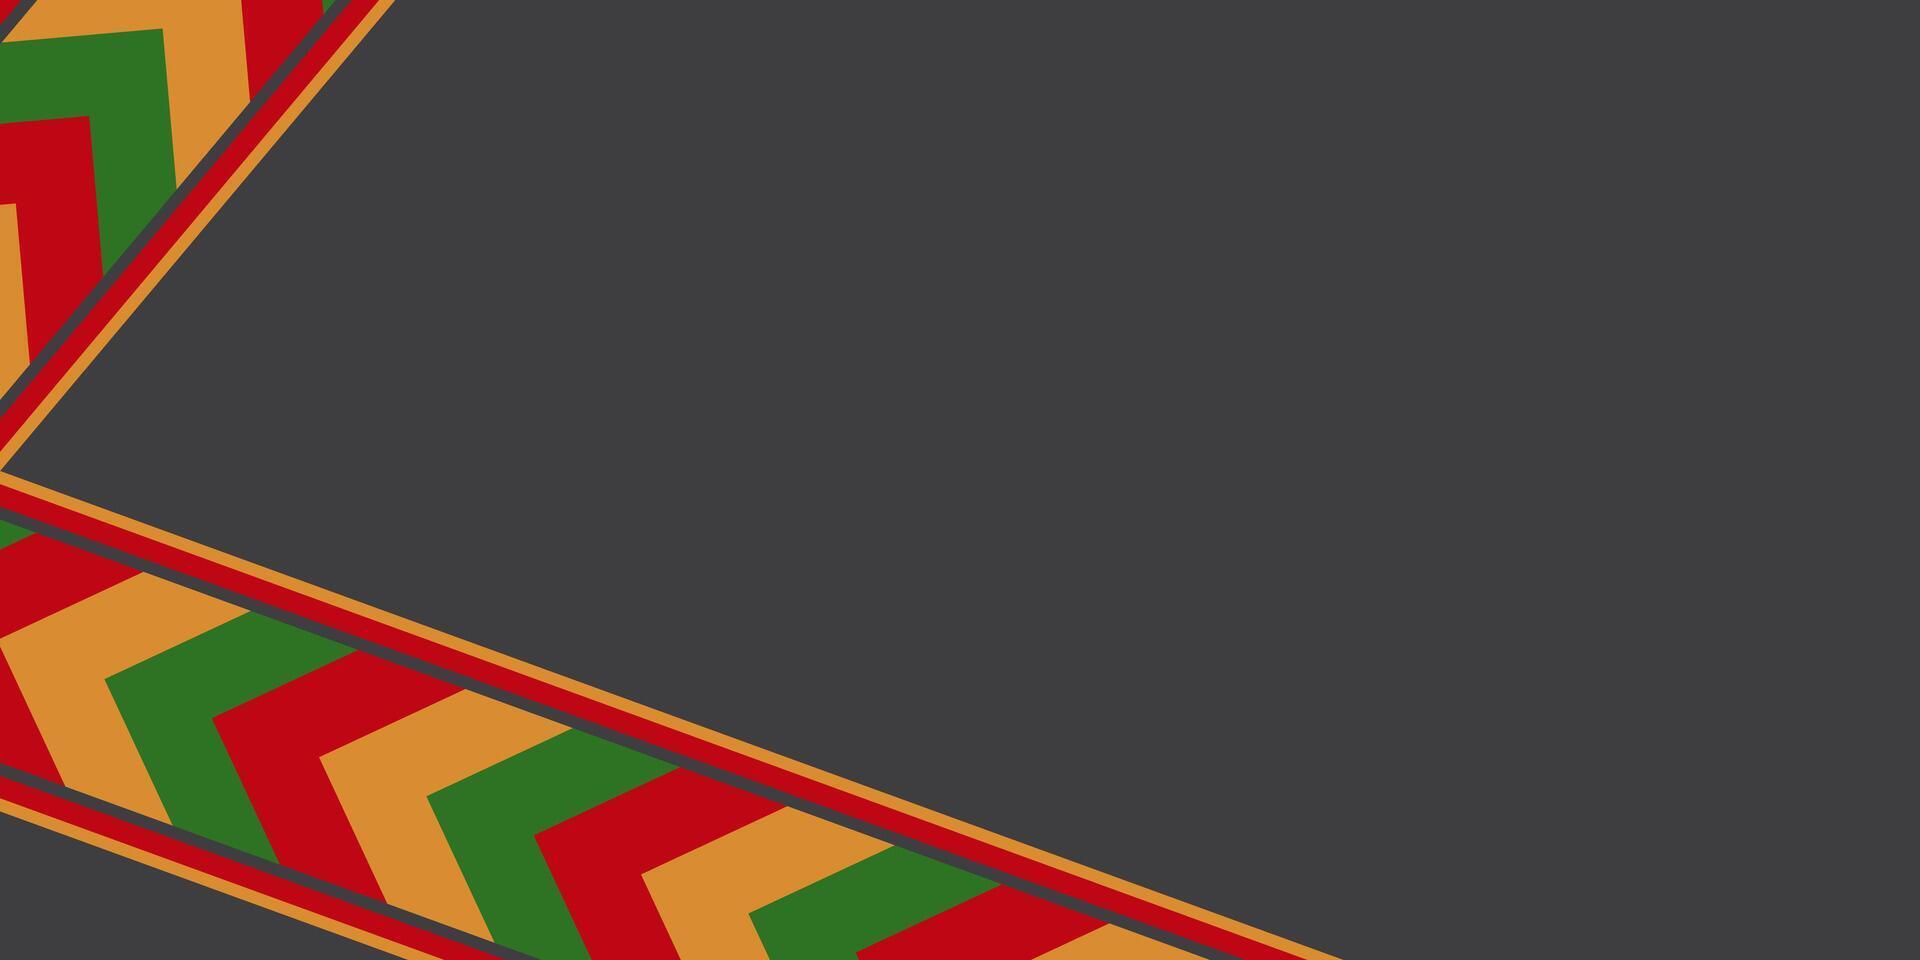 zwart, rood, geel, groen abstract juneteenth achtergrond. vector sjabloon ontwerp met leeg ruimte voor tekst. Afrikaanse Amerikaans zwart geschiedenis maand.